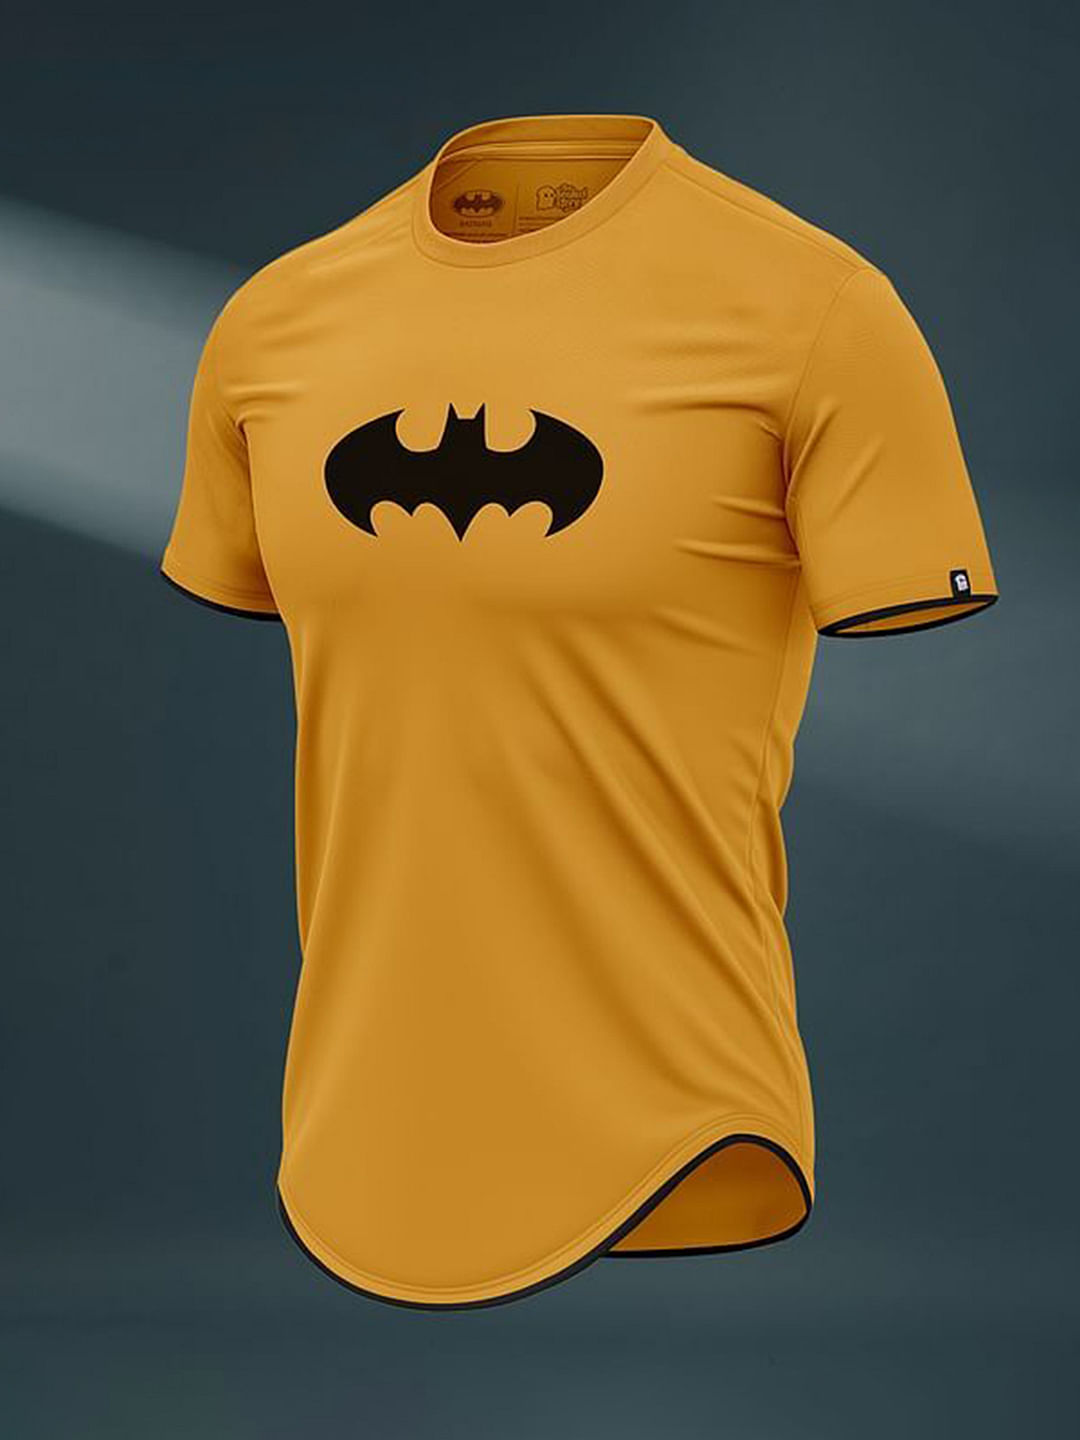 batman t shirt